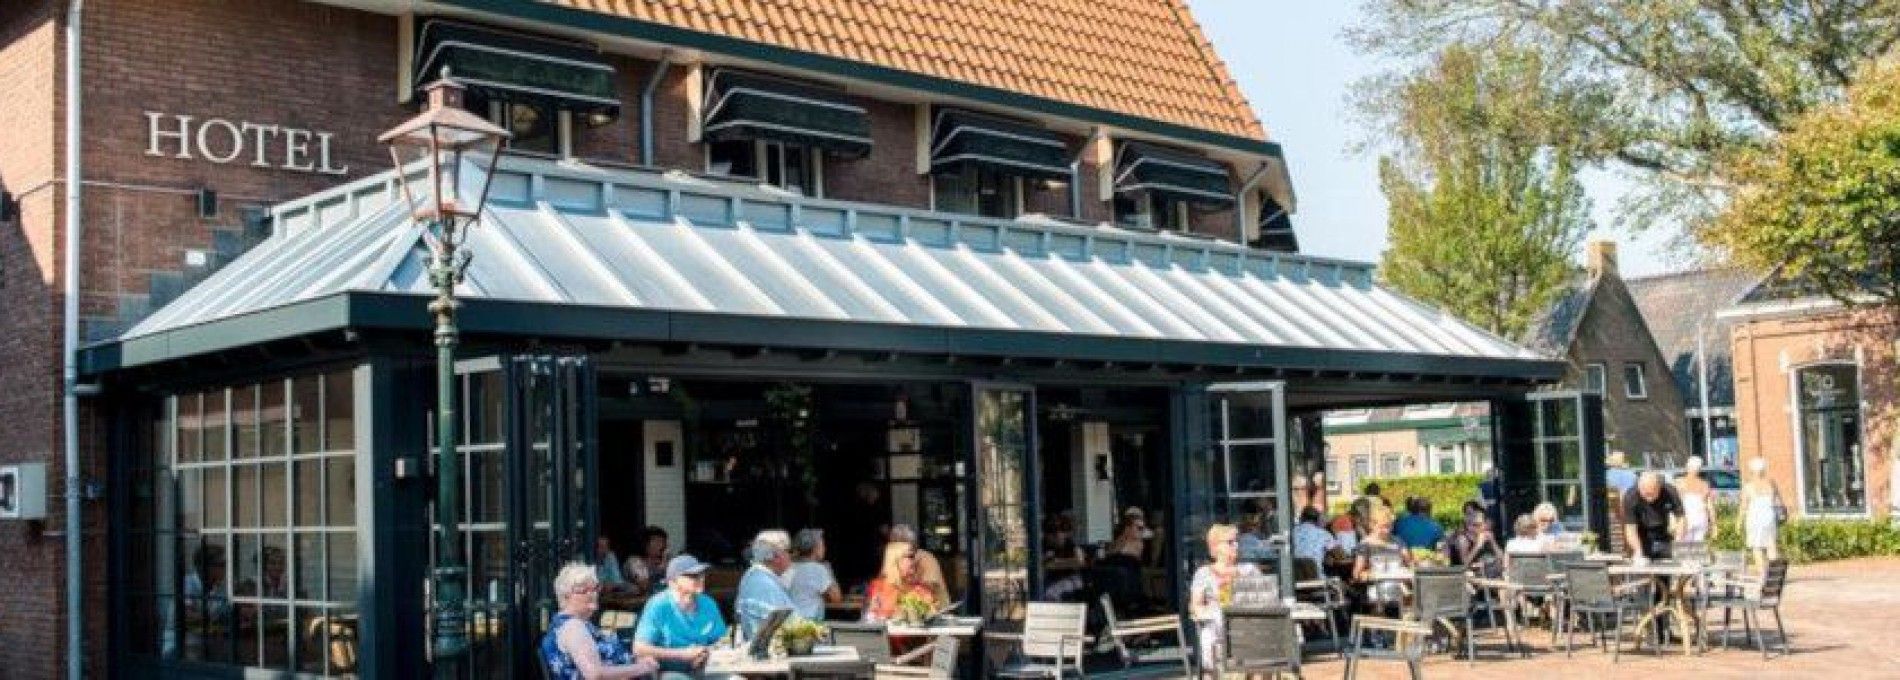 Hotelrestaurant De Jong - VVV Ameland